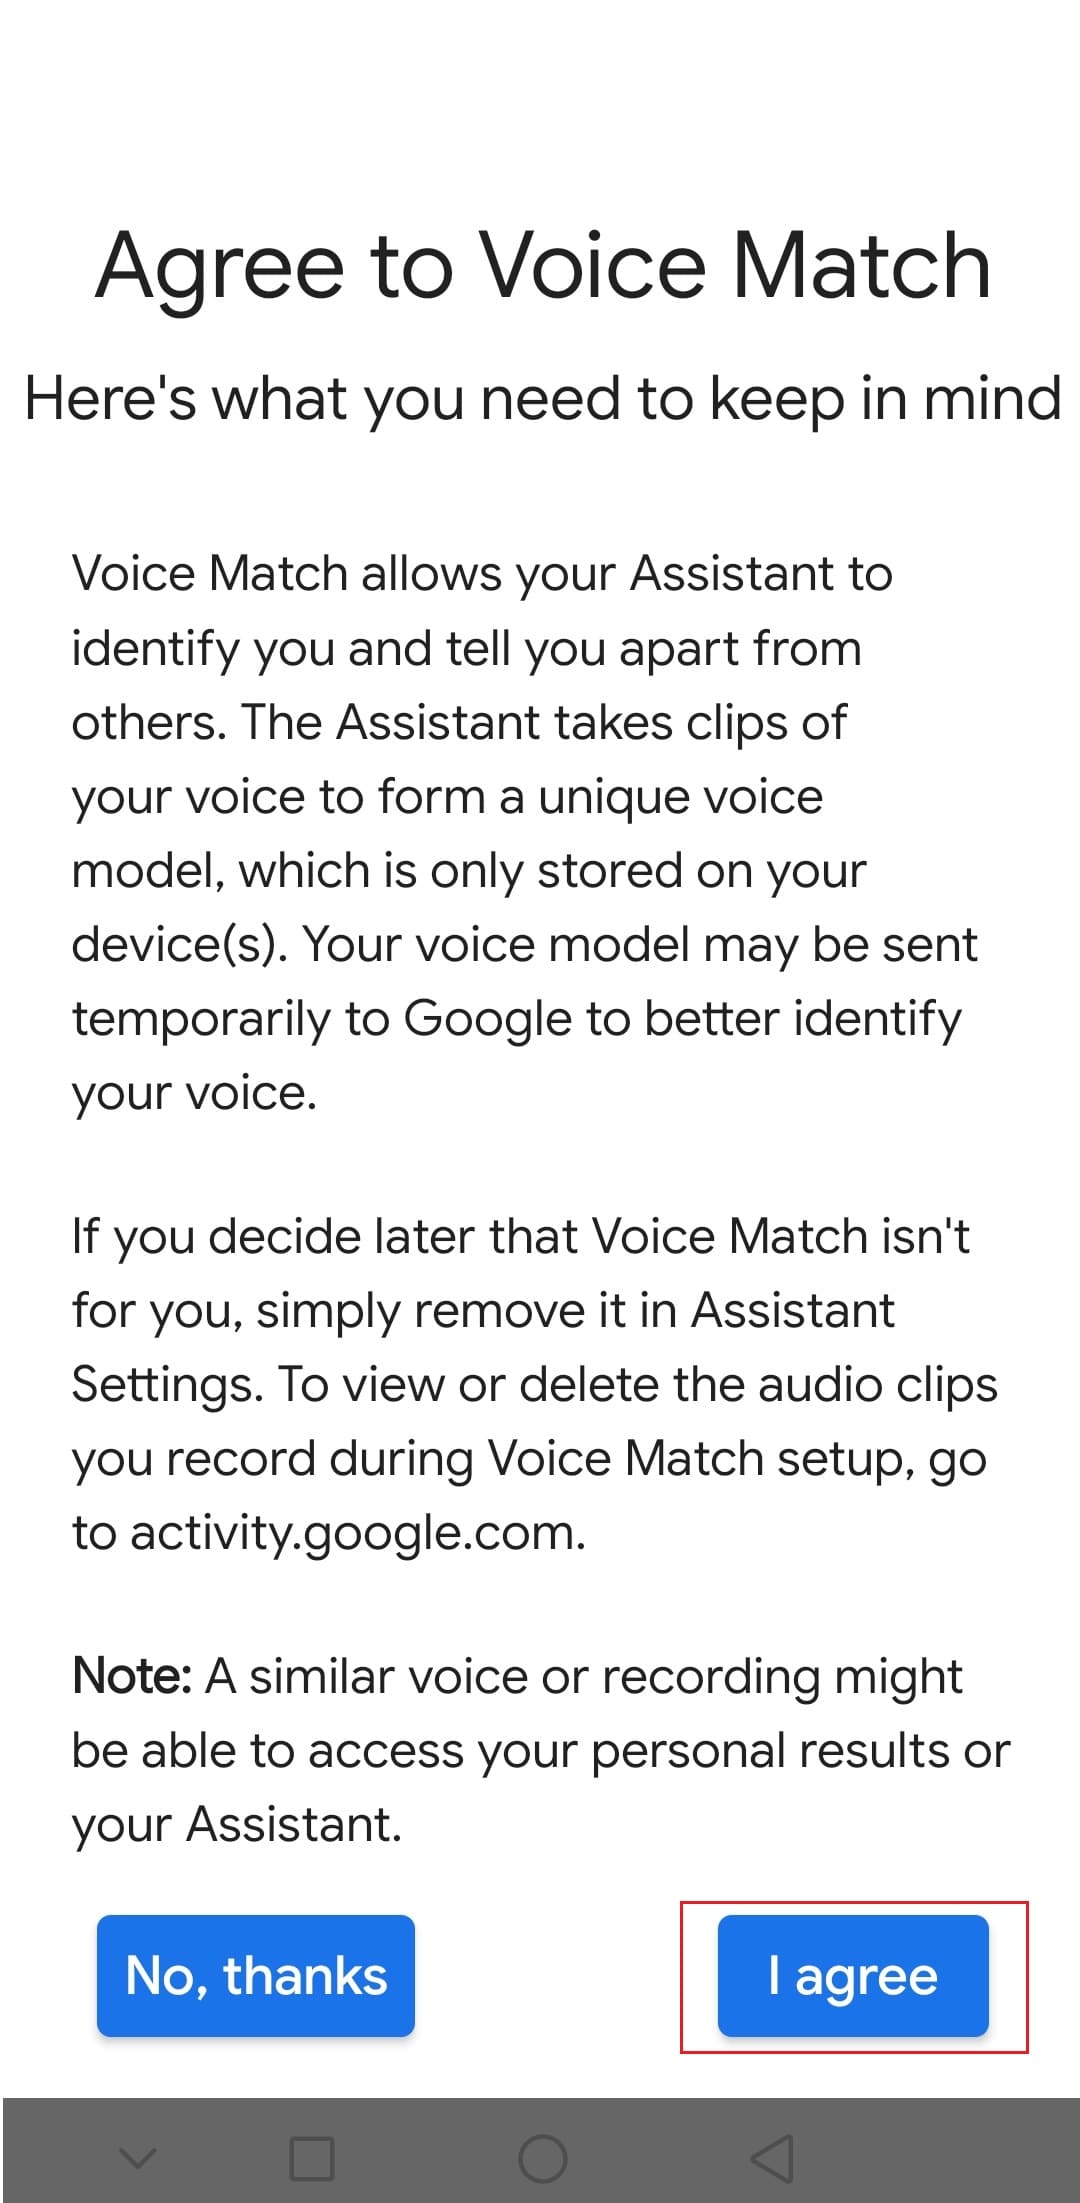 toque la opción Acepto para aceptar Voice Match en la aplicación de Google para Android